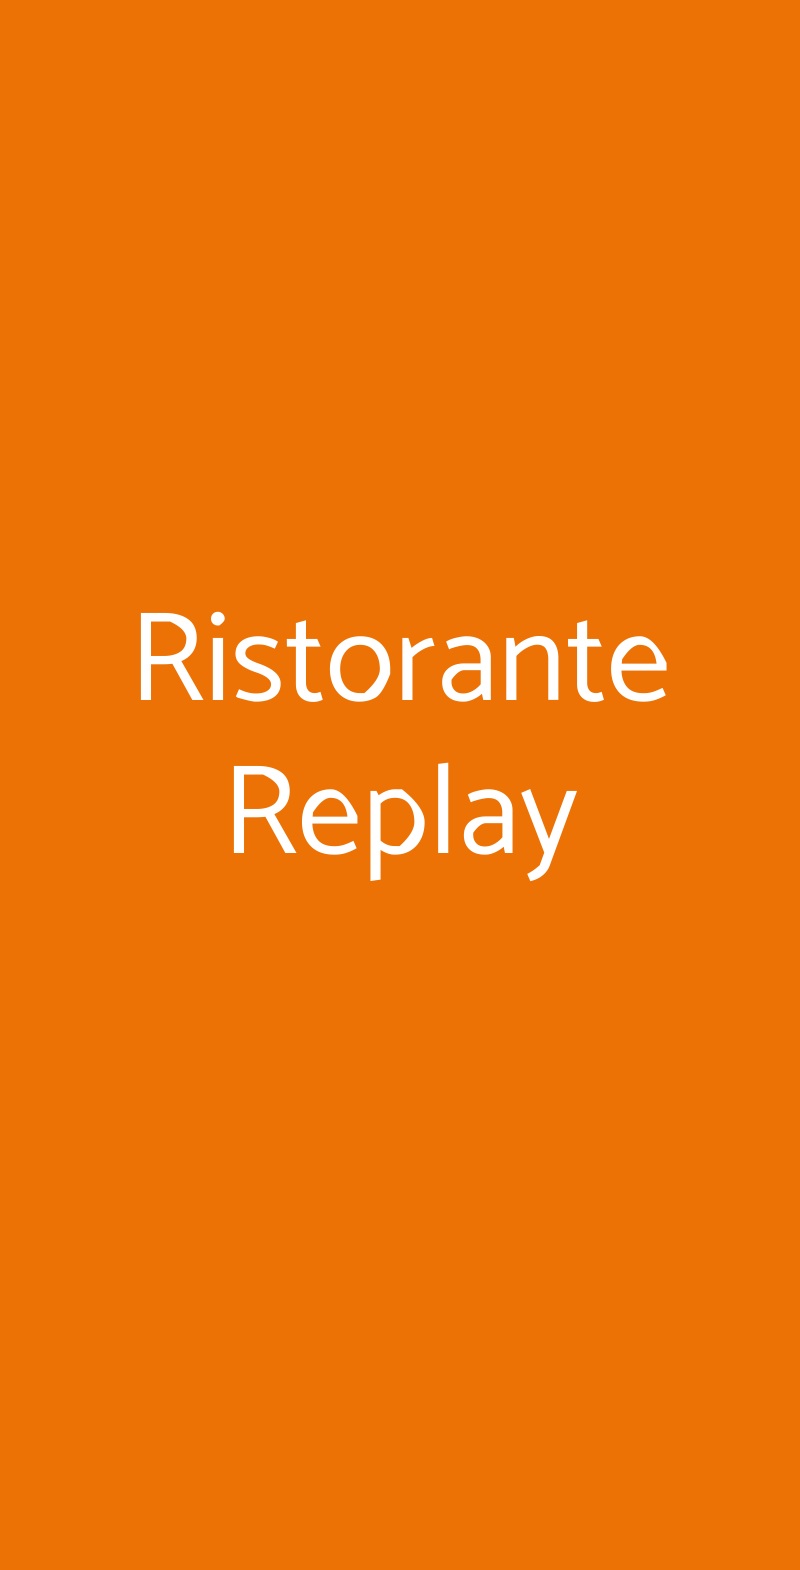 Ristorante Replay Milano menù 1 pagina